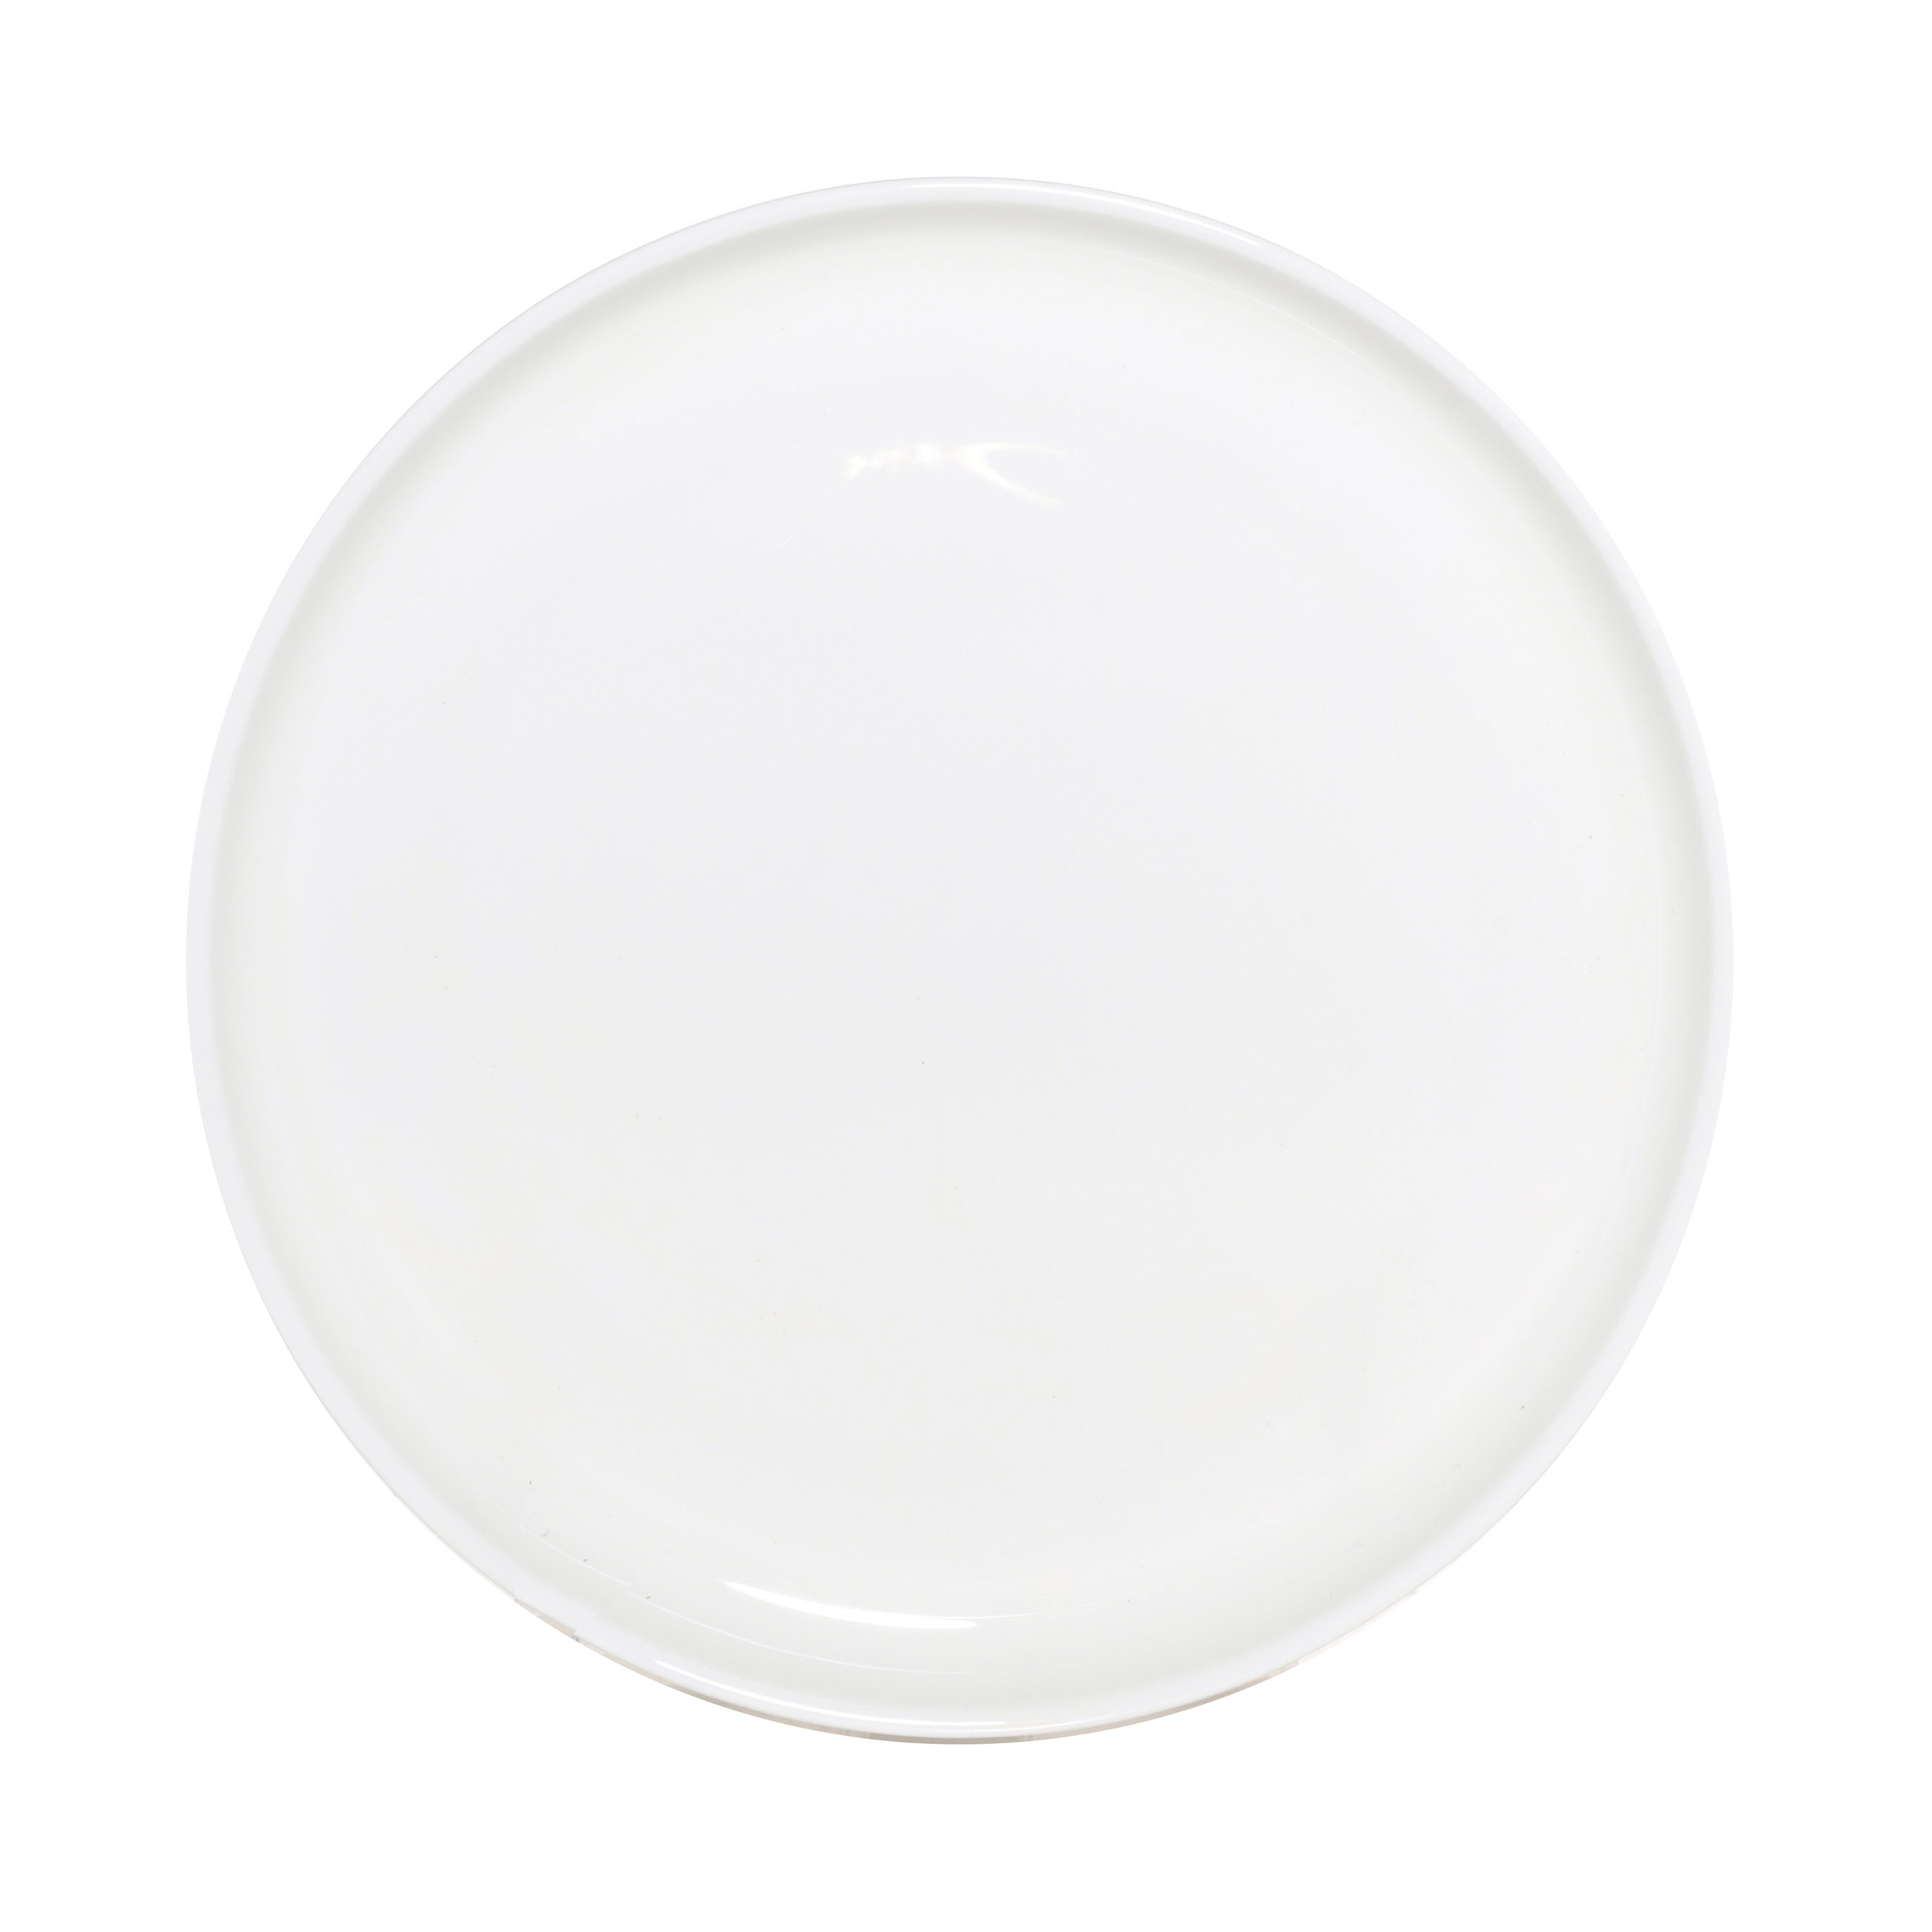 Тарелка десертная, 20 см, 2 шт, фарфор F, белая, Ideal white изображение № 2